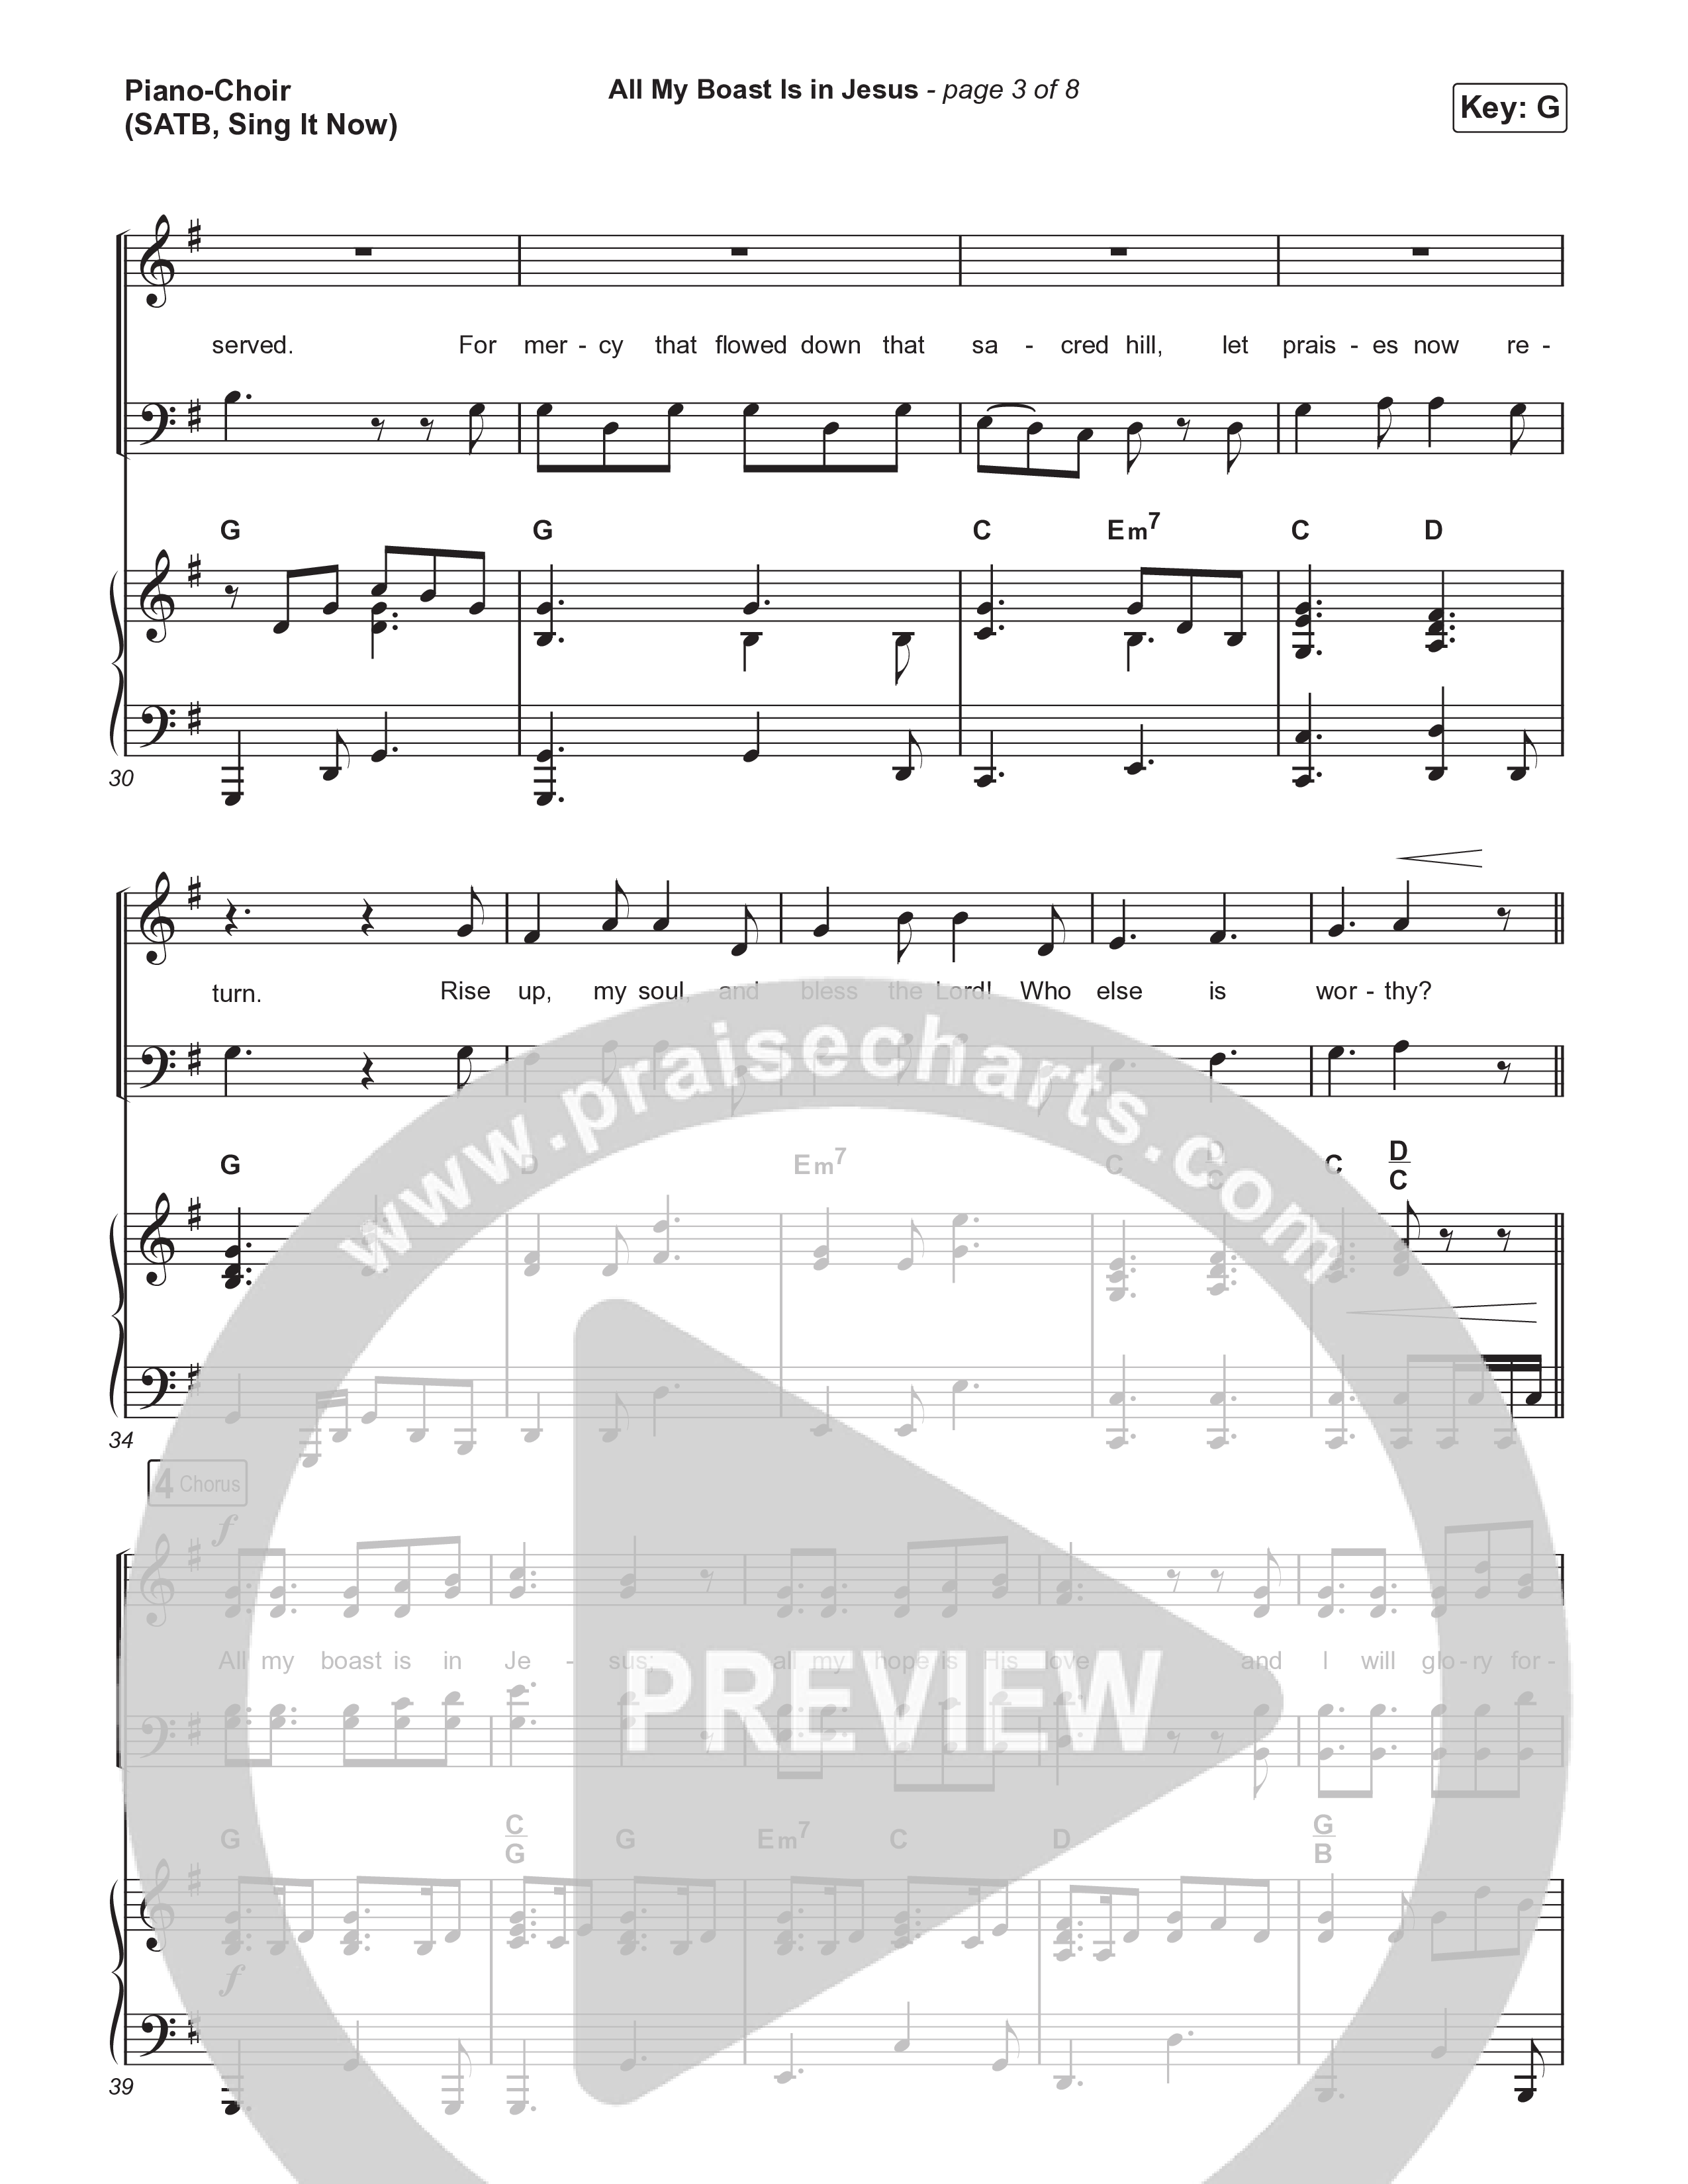 All My Boast Is In Jesus (Sing It Now) Piano/Choir (SATB) (Matt Papa / Matt Boswell / Arr. Mason Brown / Keith & Kristyn Getty)